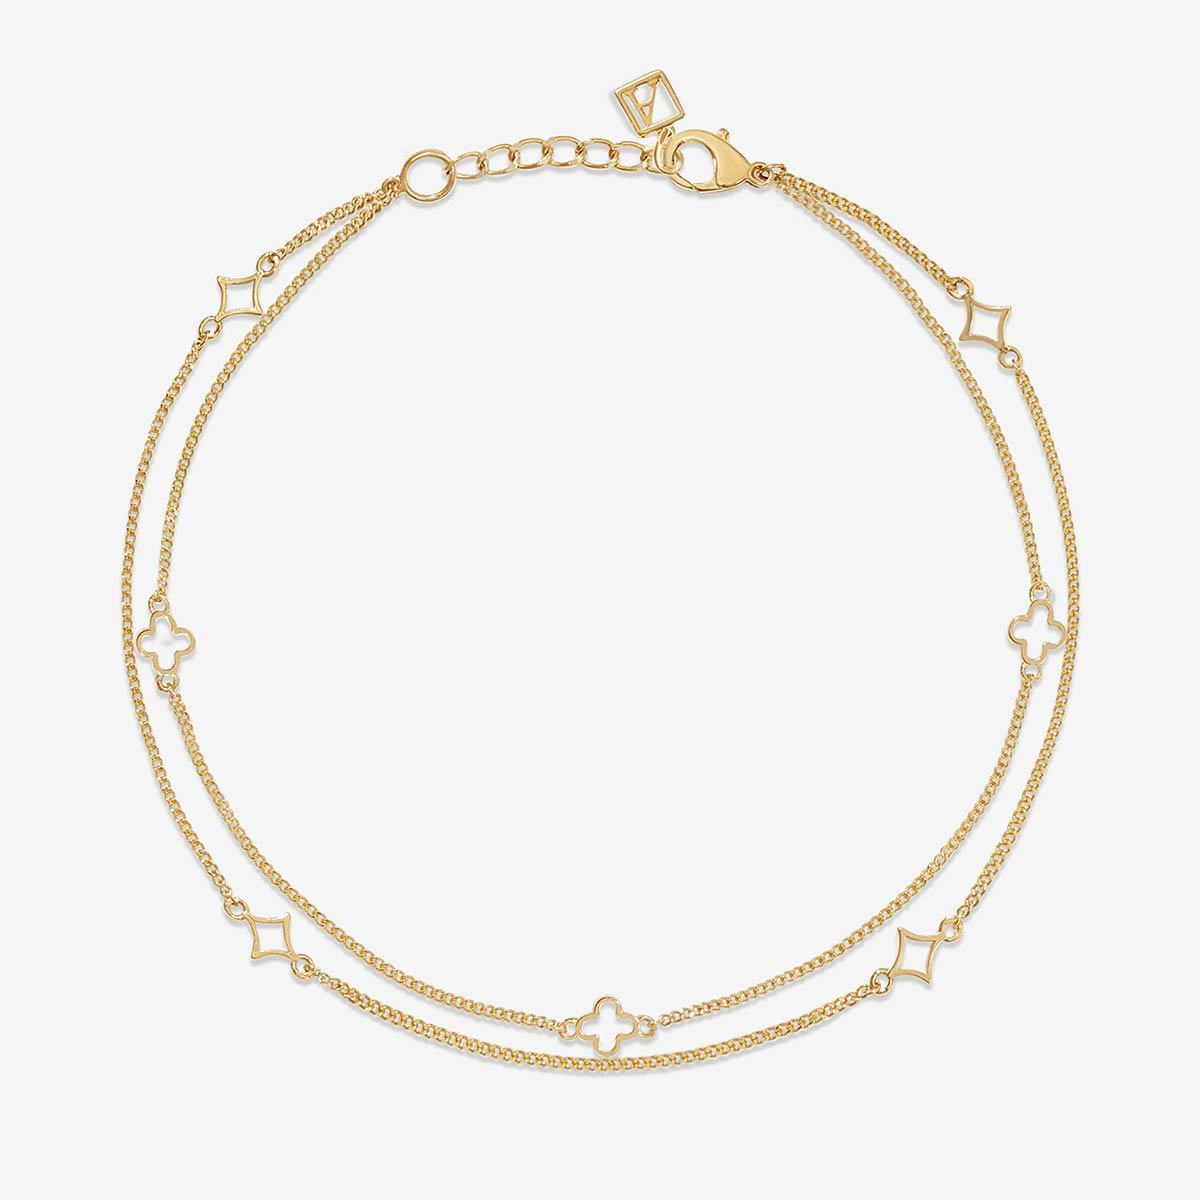 LV Clover Necklace, Bracelet and Anklet